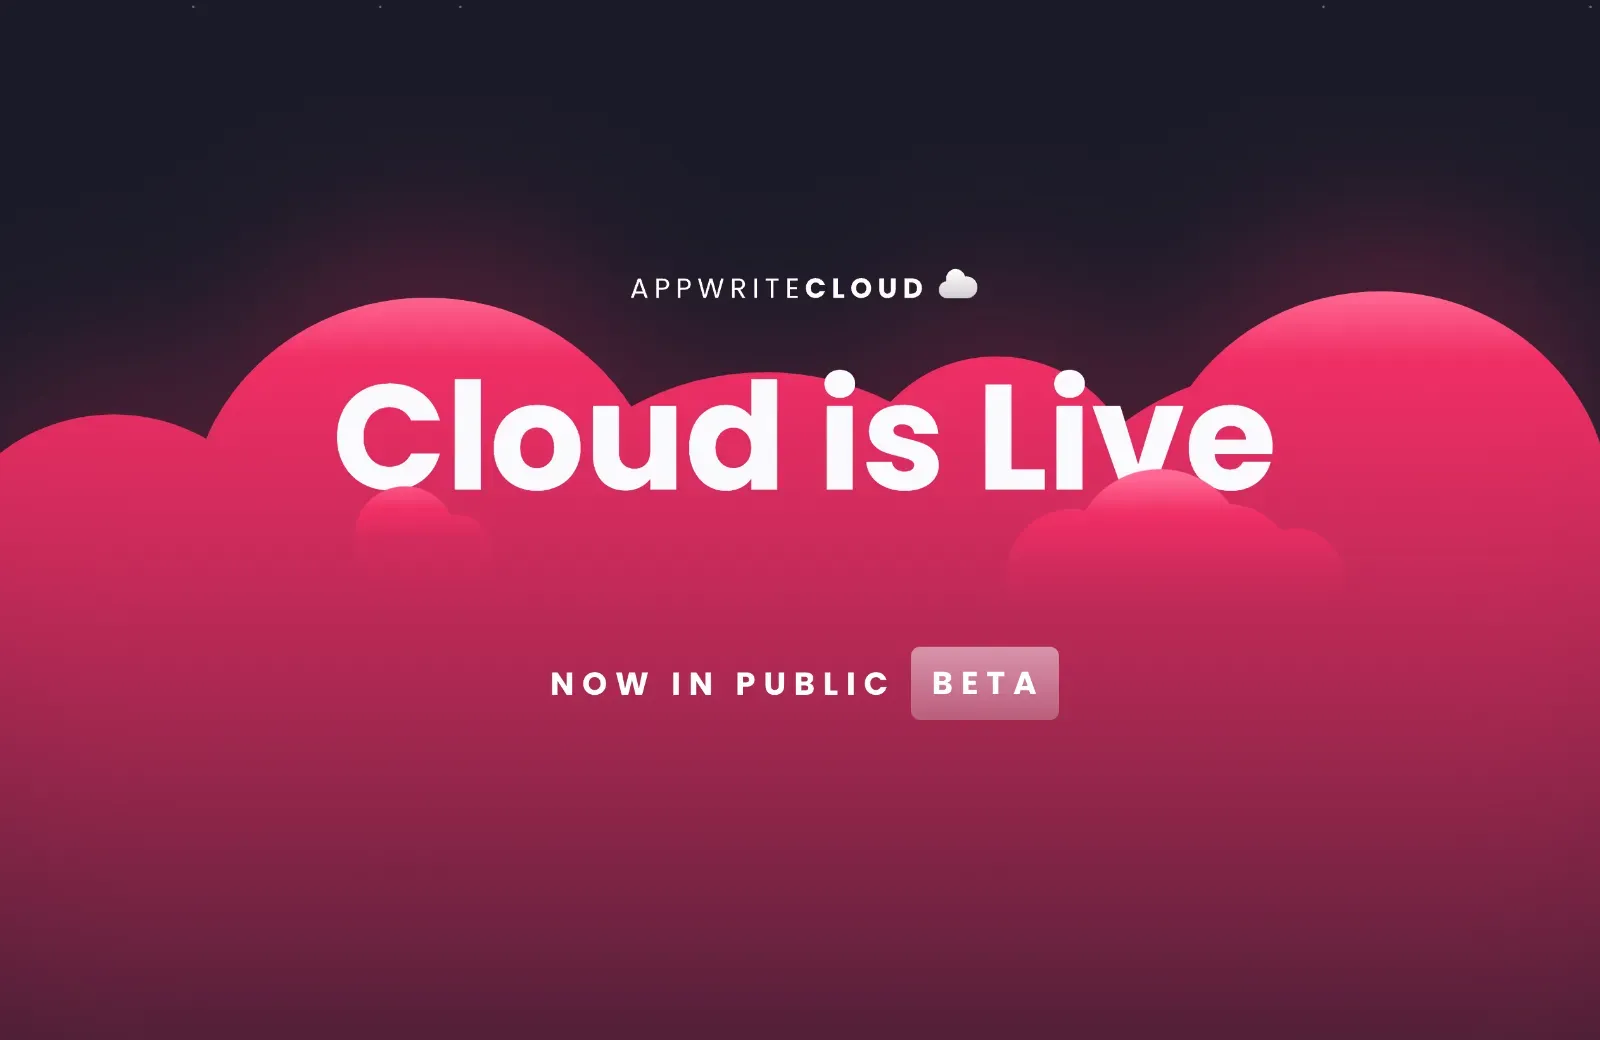 Appwrite Cloud